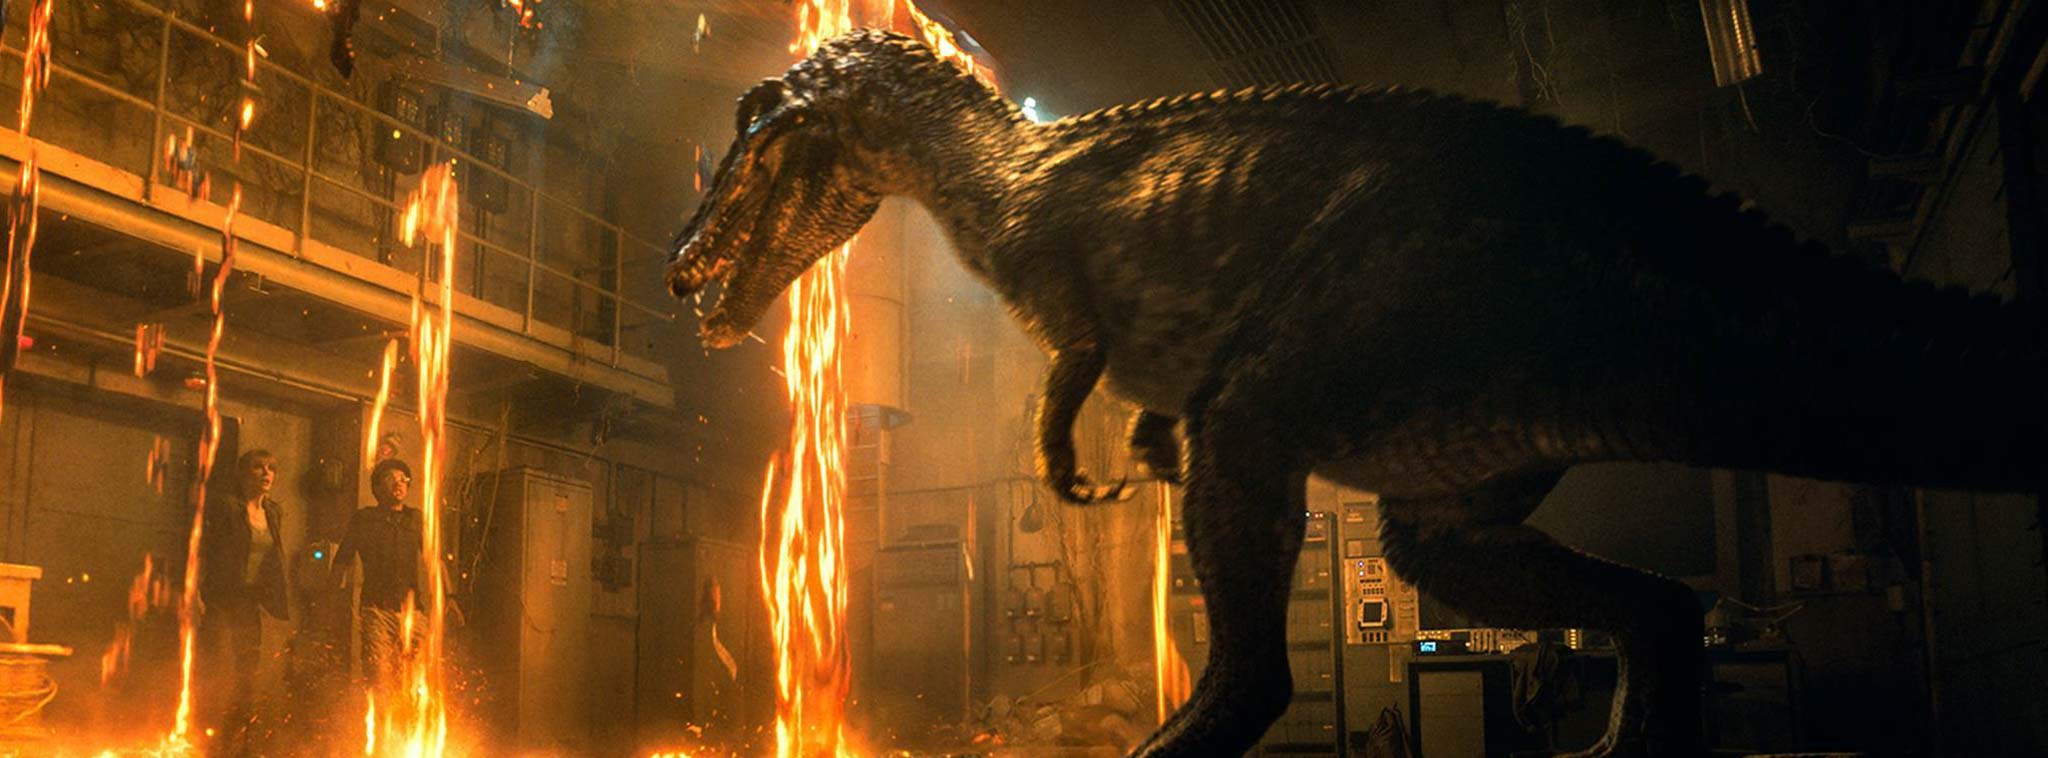 Mời xem trailer phim Jurassic World: Fallen Kingdom - Giải cứu khủng long khỏi hòn đảo chết